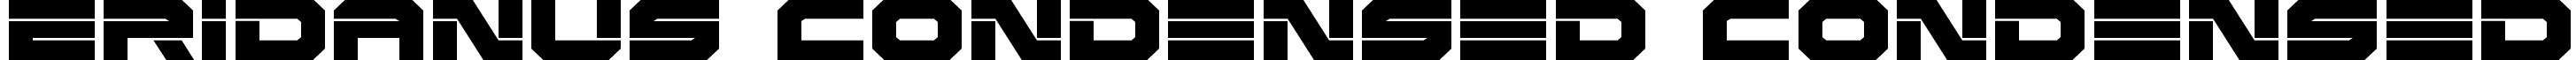 Eridanus Condensed Condensed font | eridanuscond.ttf